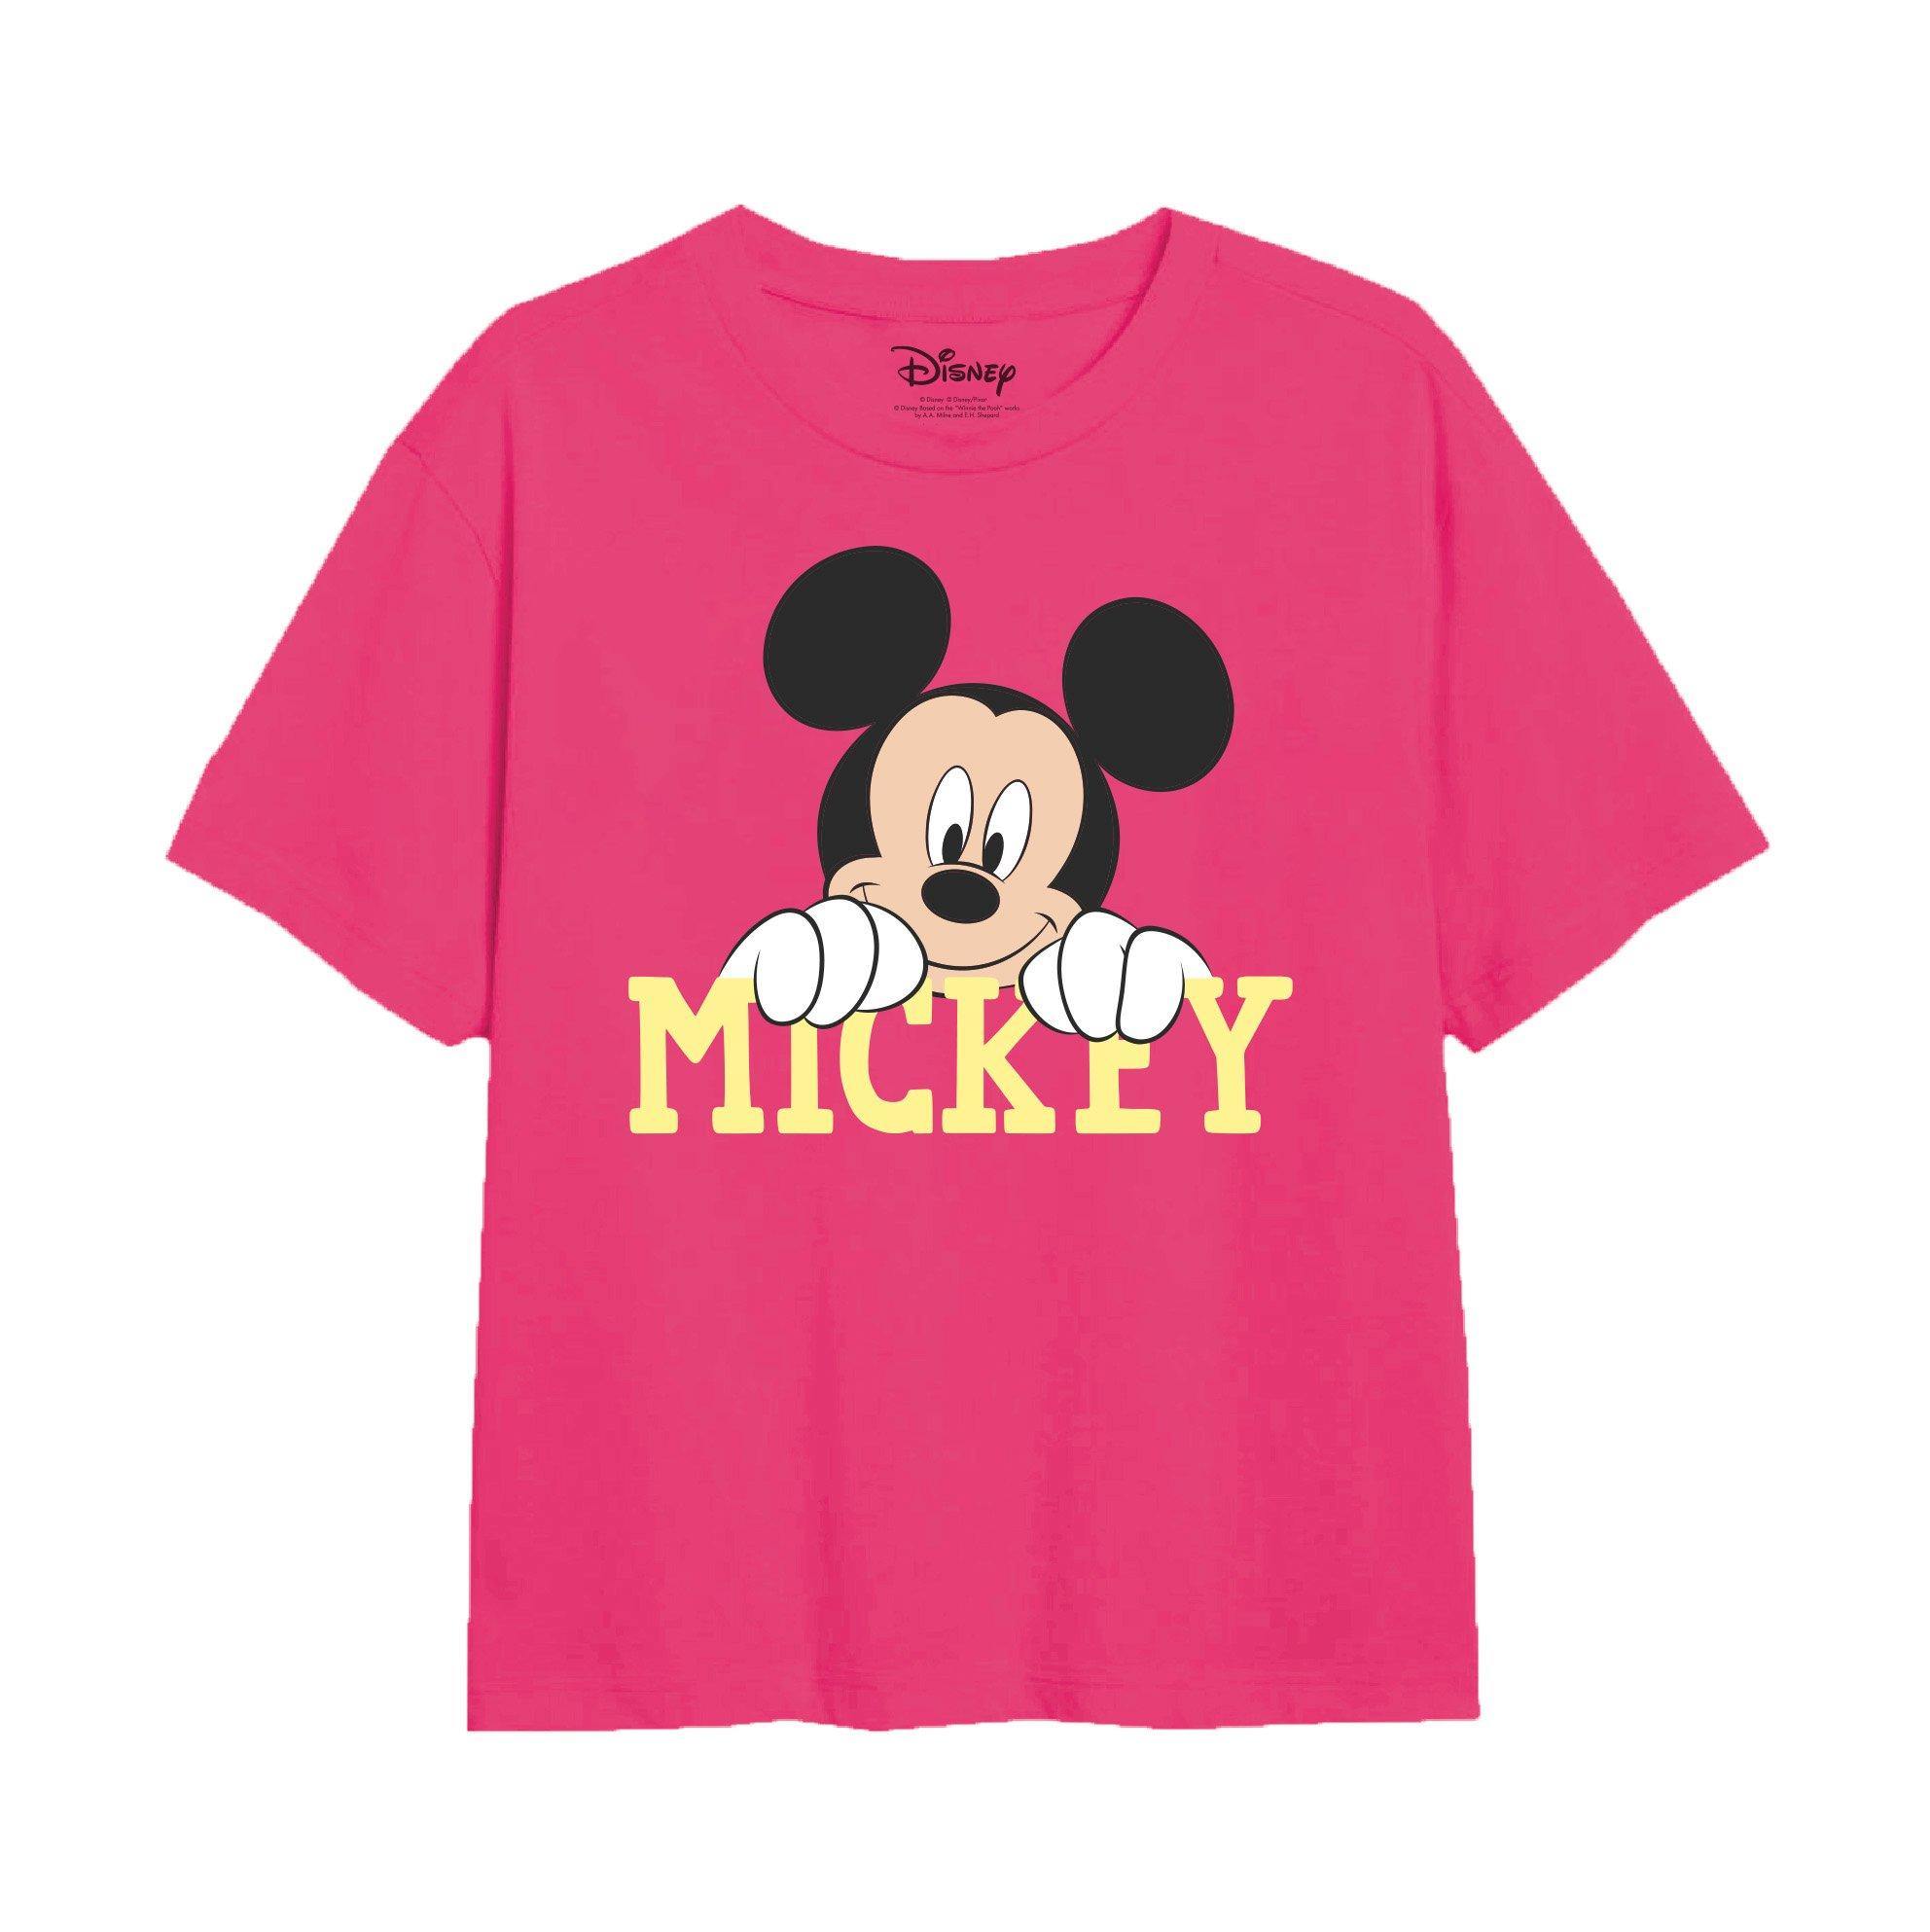 Футболка с милым лицом Микки Мауса Disney, розовый пазл микки и минни маус 35 500 1000 шт